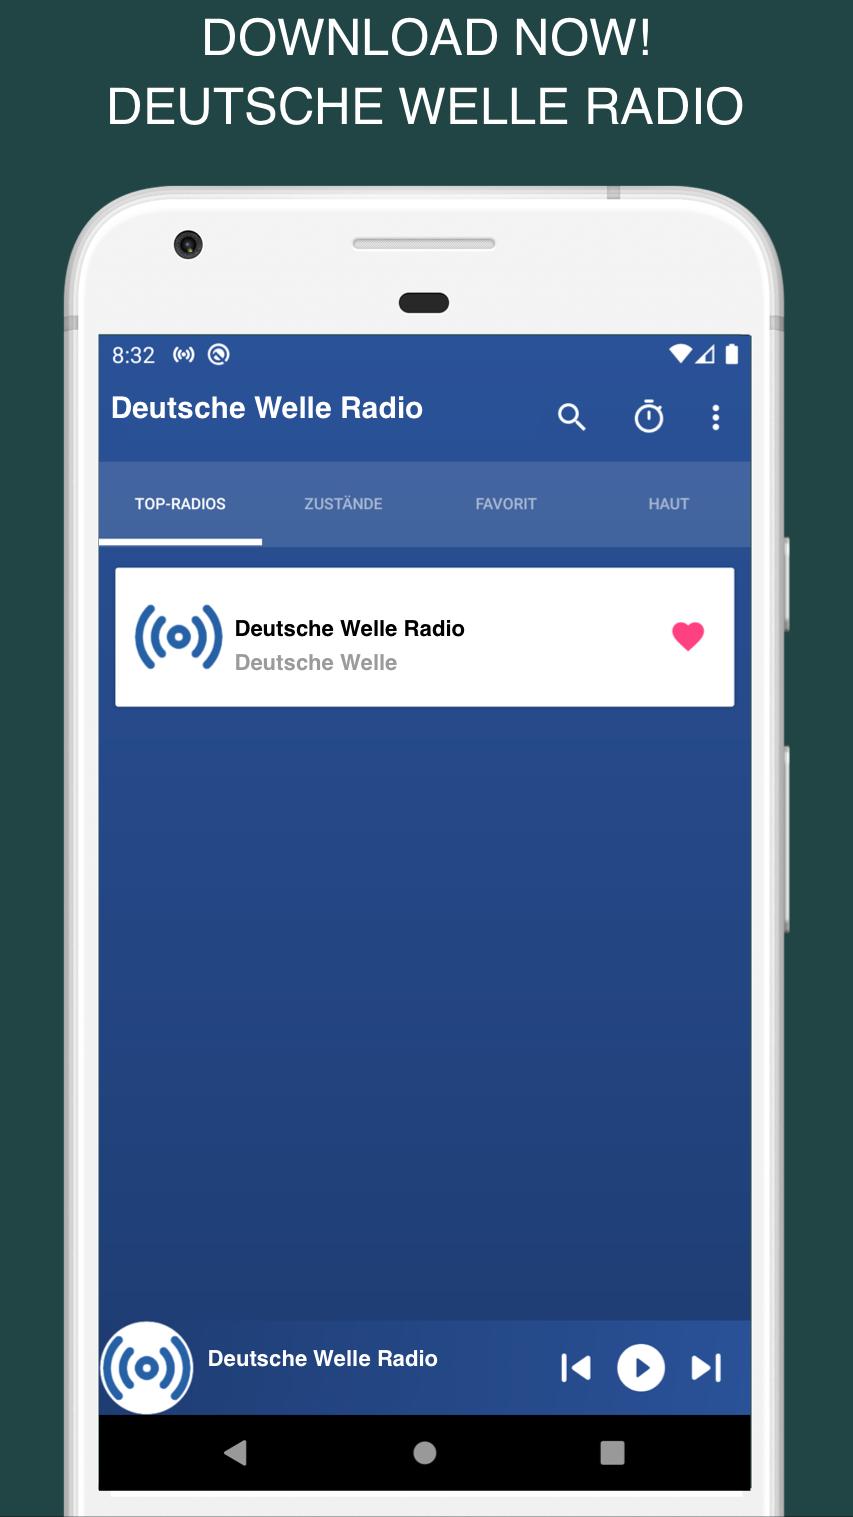 Deutsche Welle Radio DW App DE for Android - APK Download